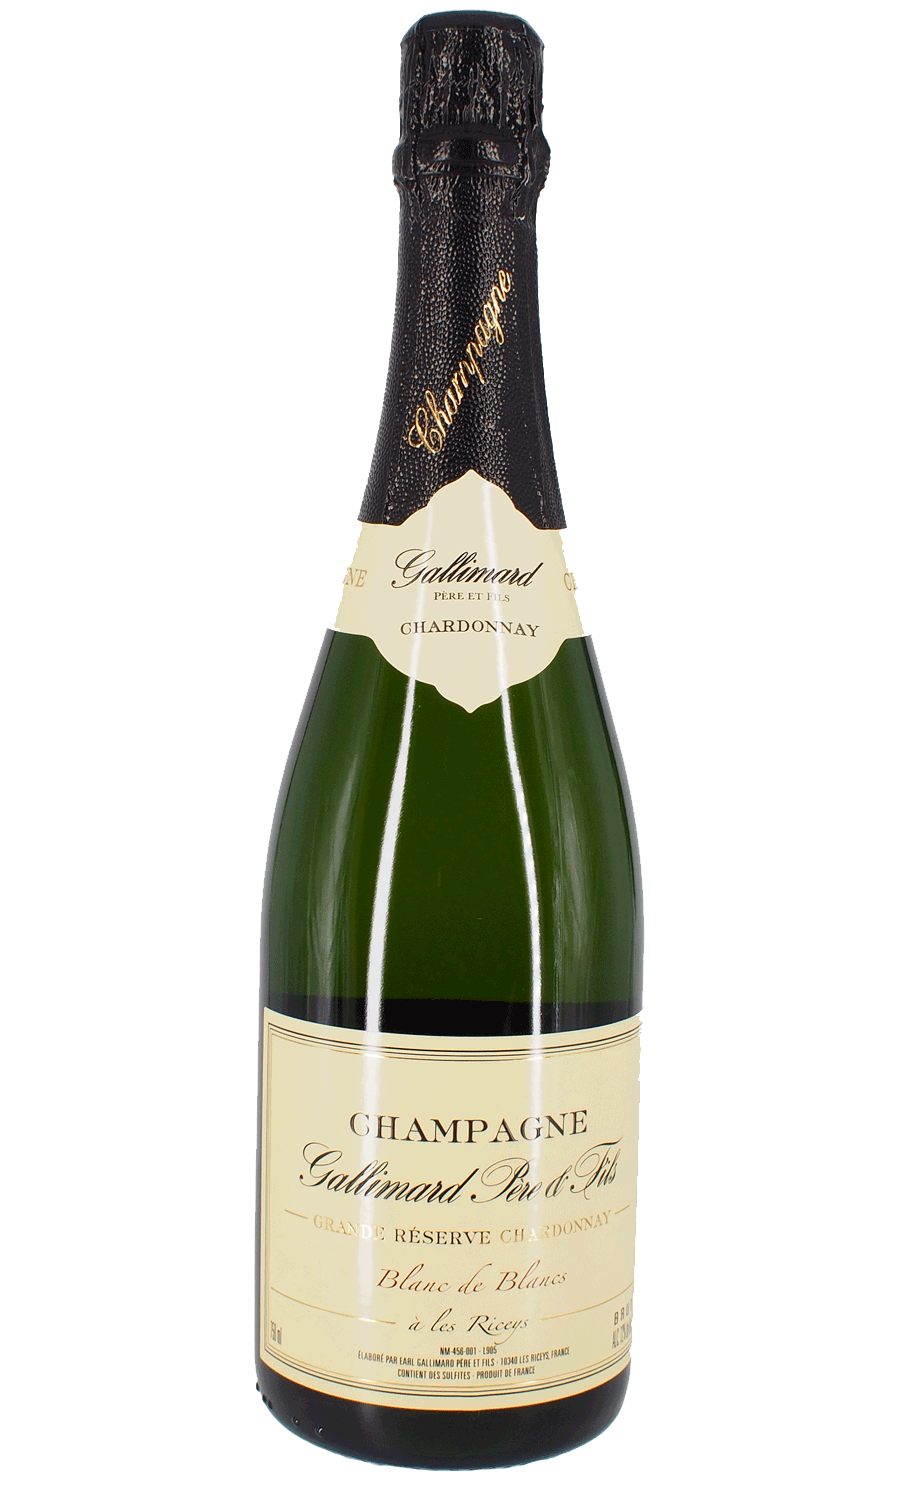 Gallimard Champagne Chardonnay Brut